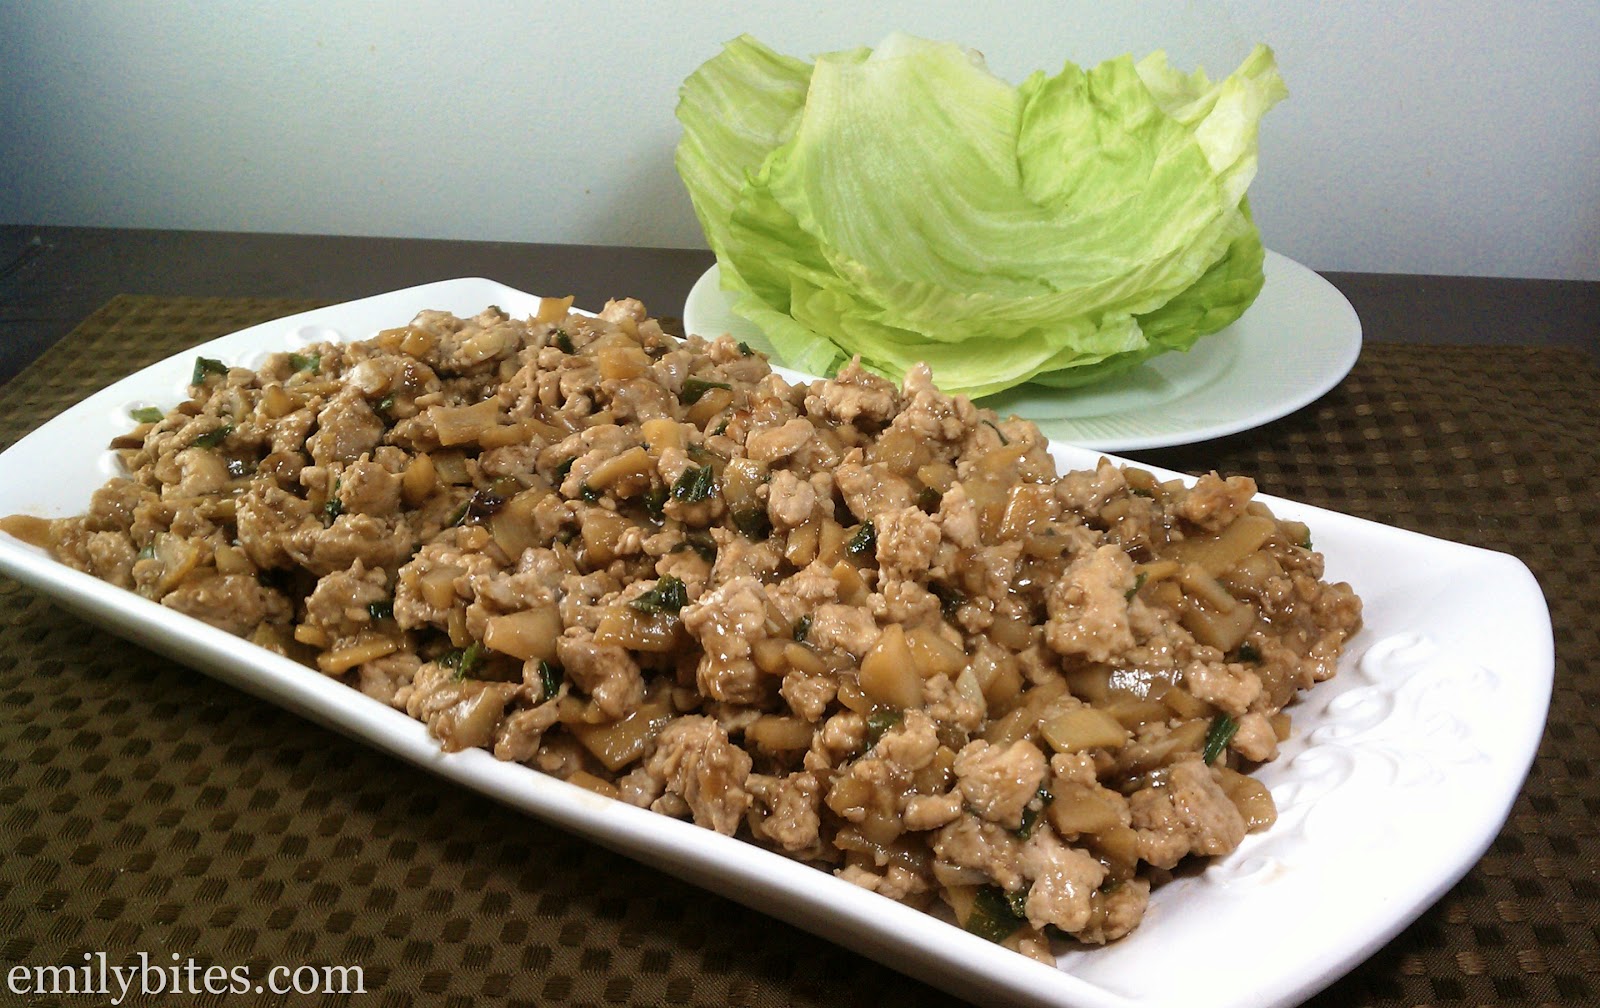 Pf Changs Chicken Lettuce Wraps Recipe Easy